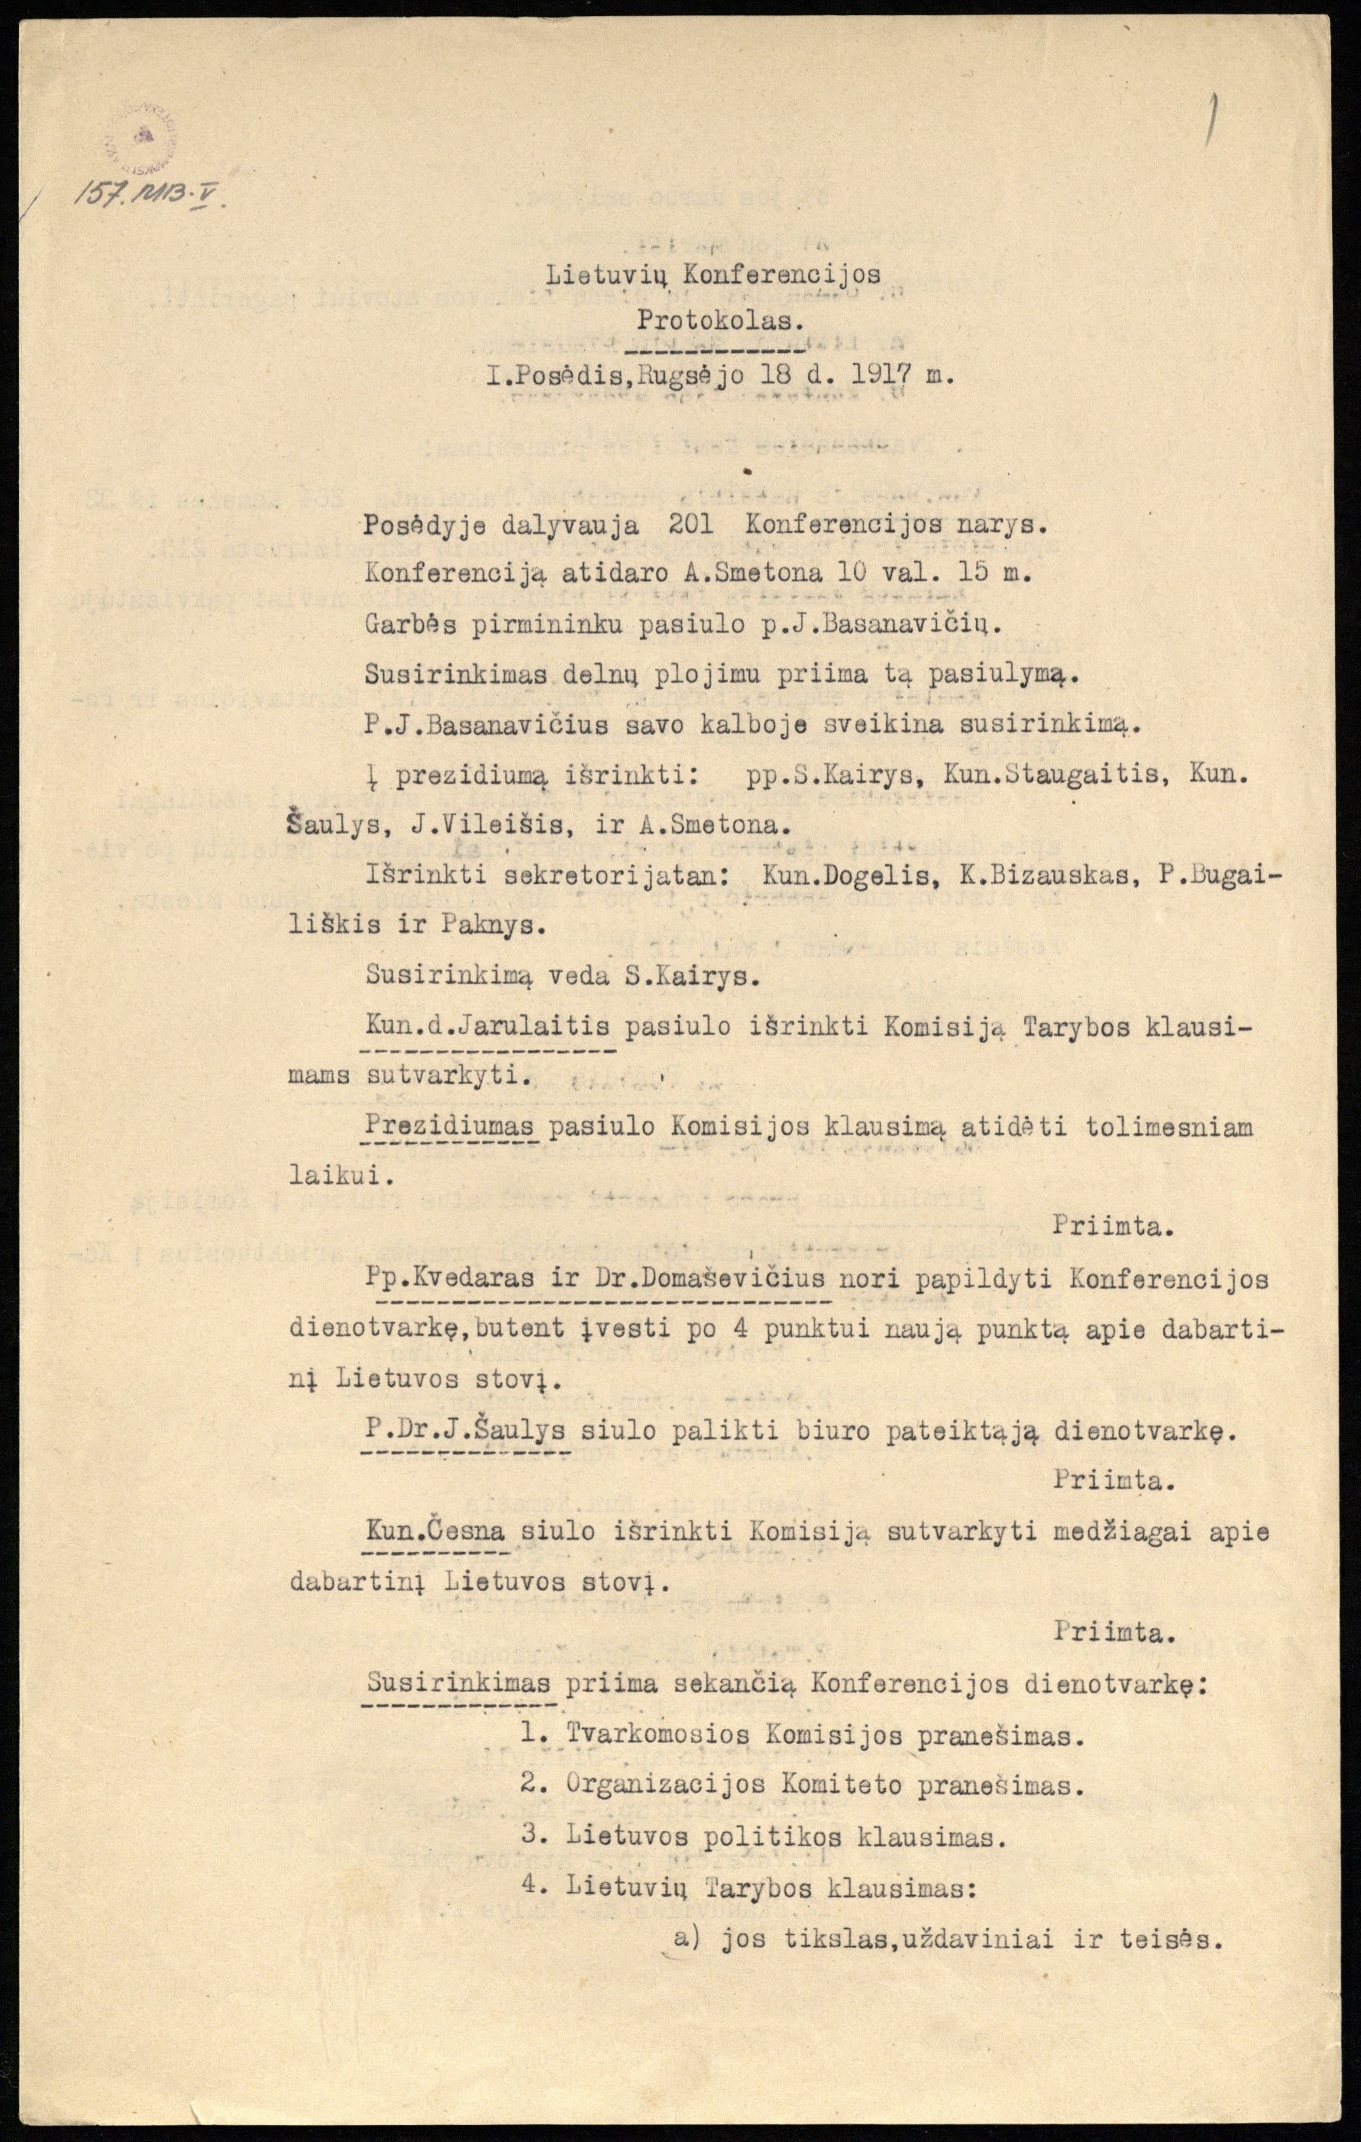 Lietuvių konferencijos protokolas. I Posėdis, 1917 m. rugsėjo 18 d. Mašinraštis